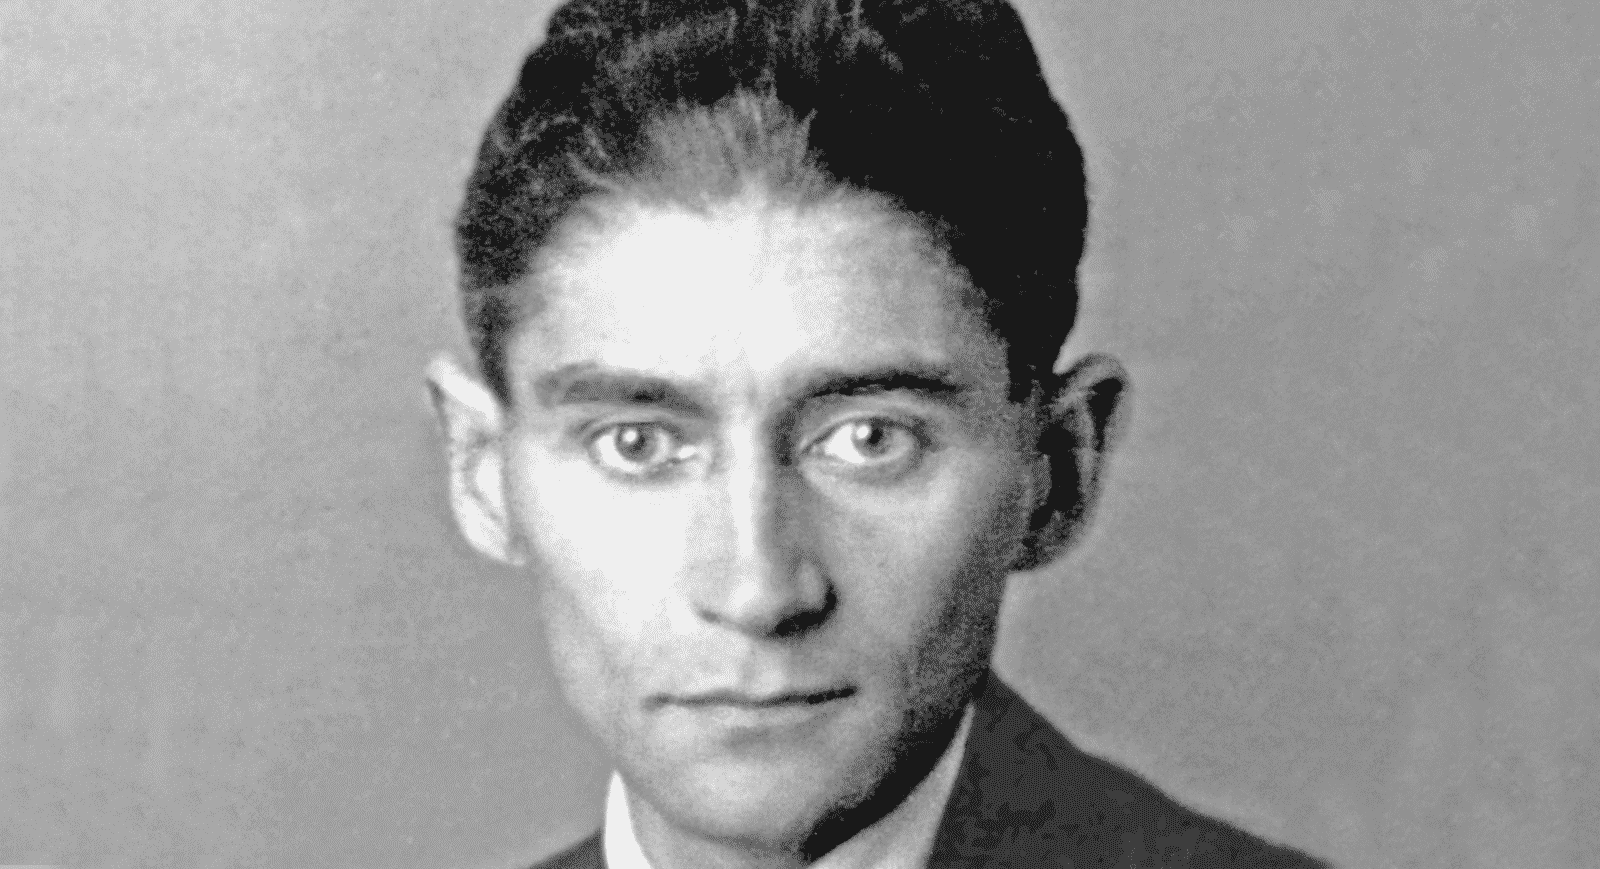 Franz Kafka, quem foi? Biografia, escrita e principais obras